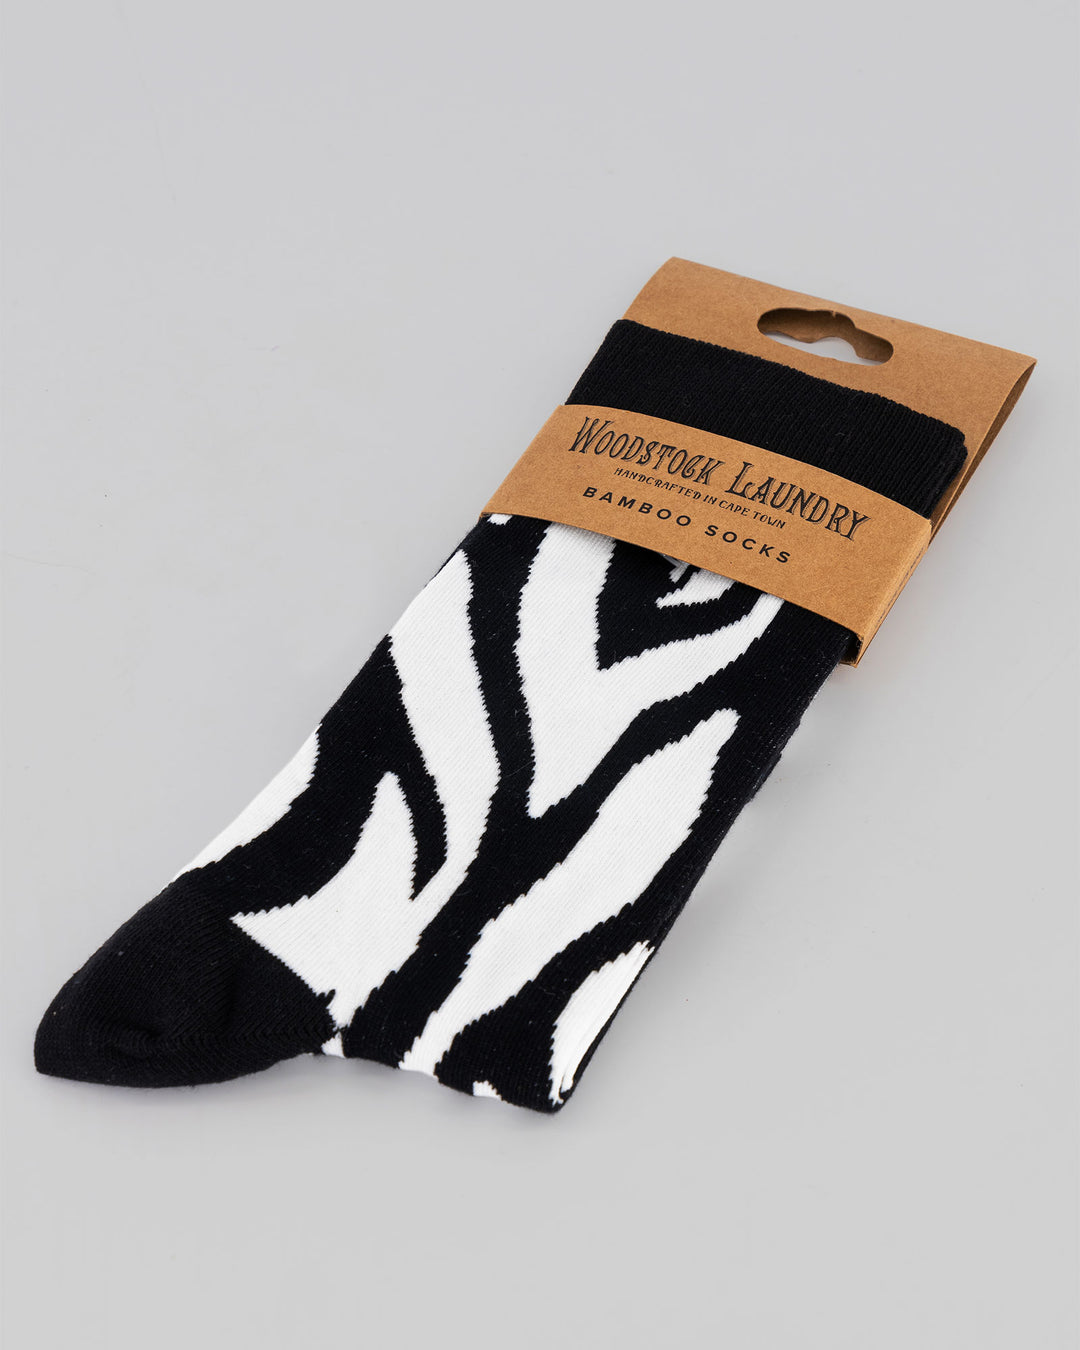 Zebra Socks Packaging - Woodstock Laundry